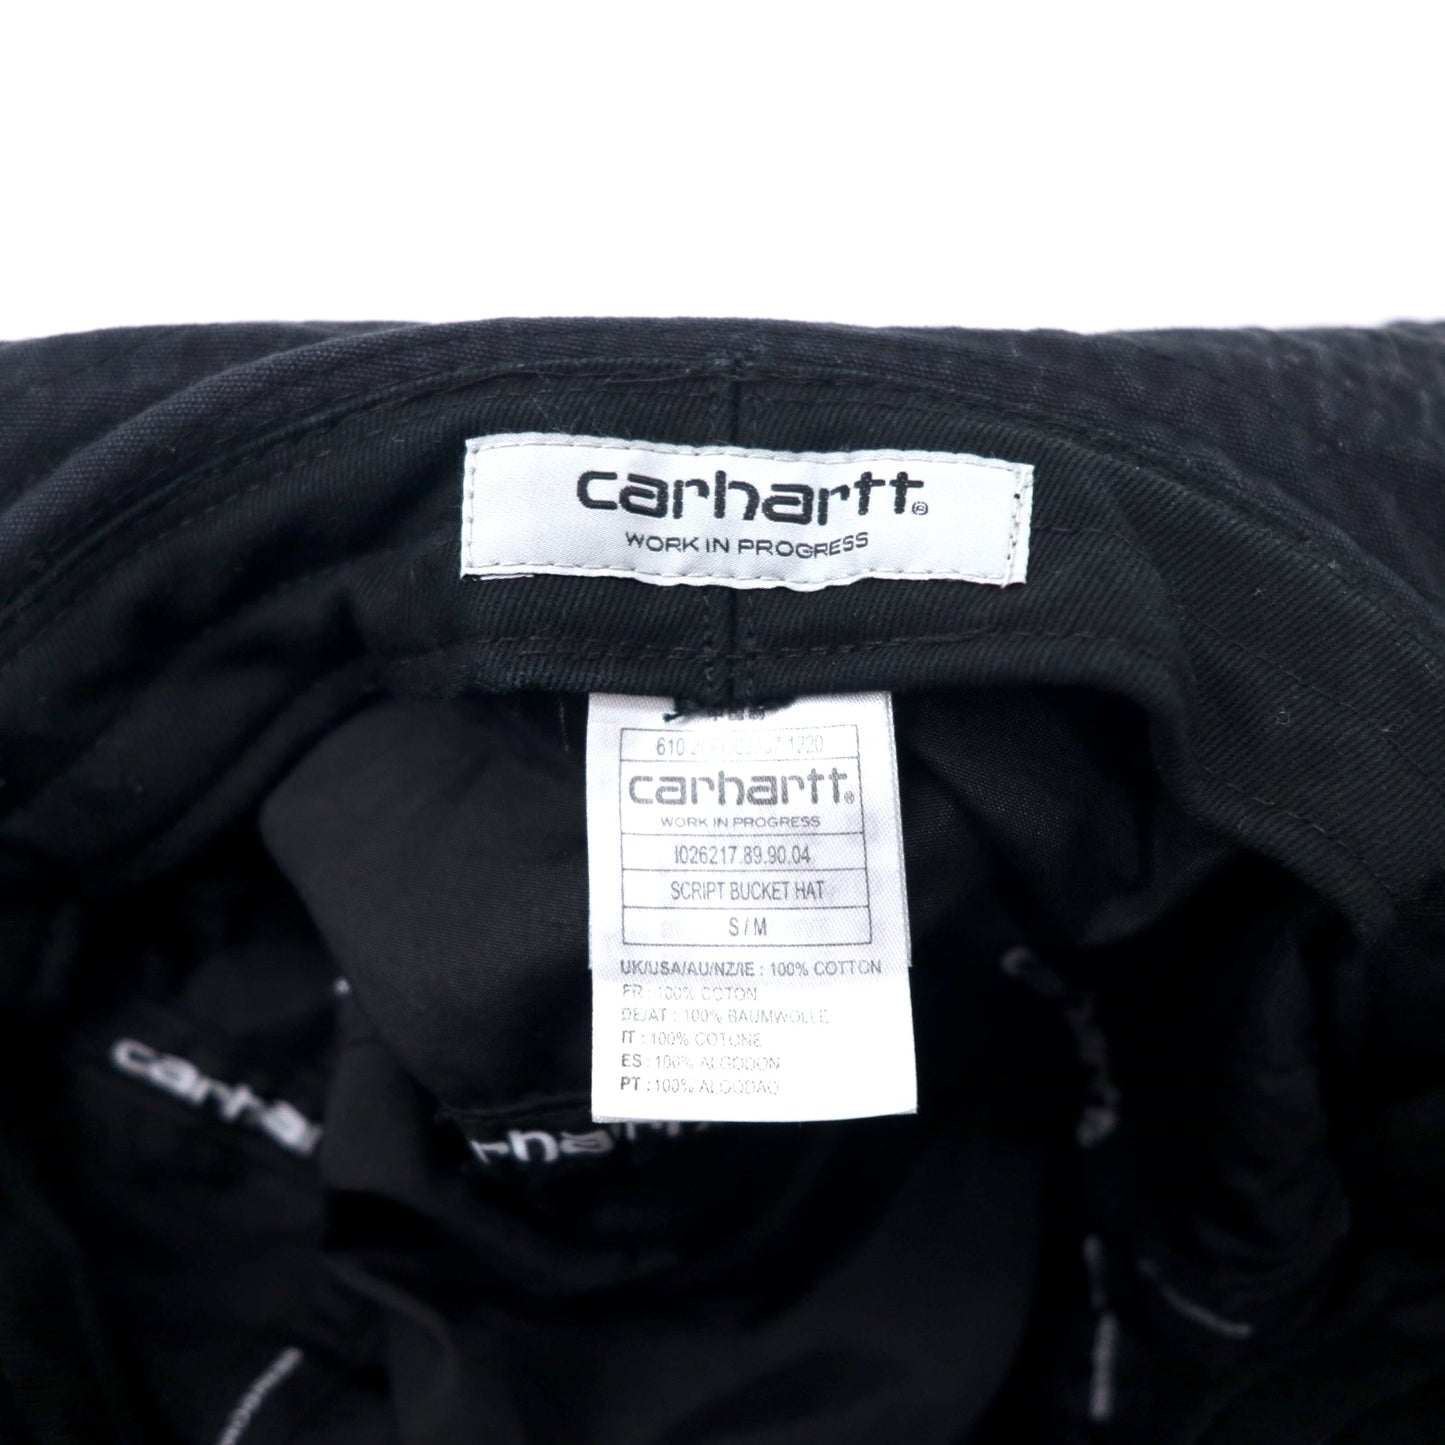 carhartt WIP スクリプト バケットハット S/M ブラック コットン SCRIPT BUCKET HAT